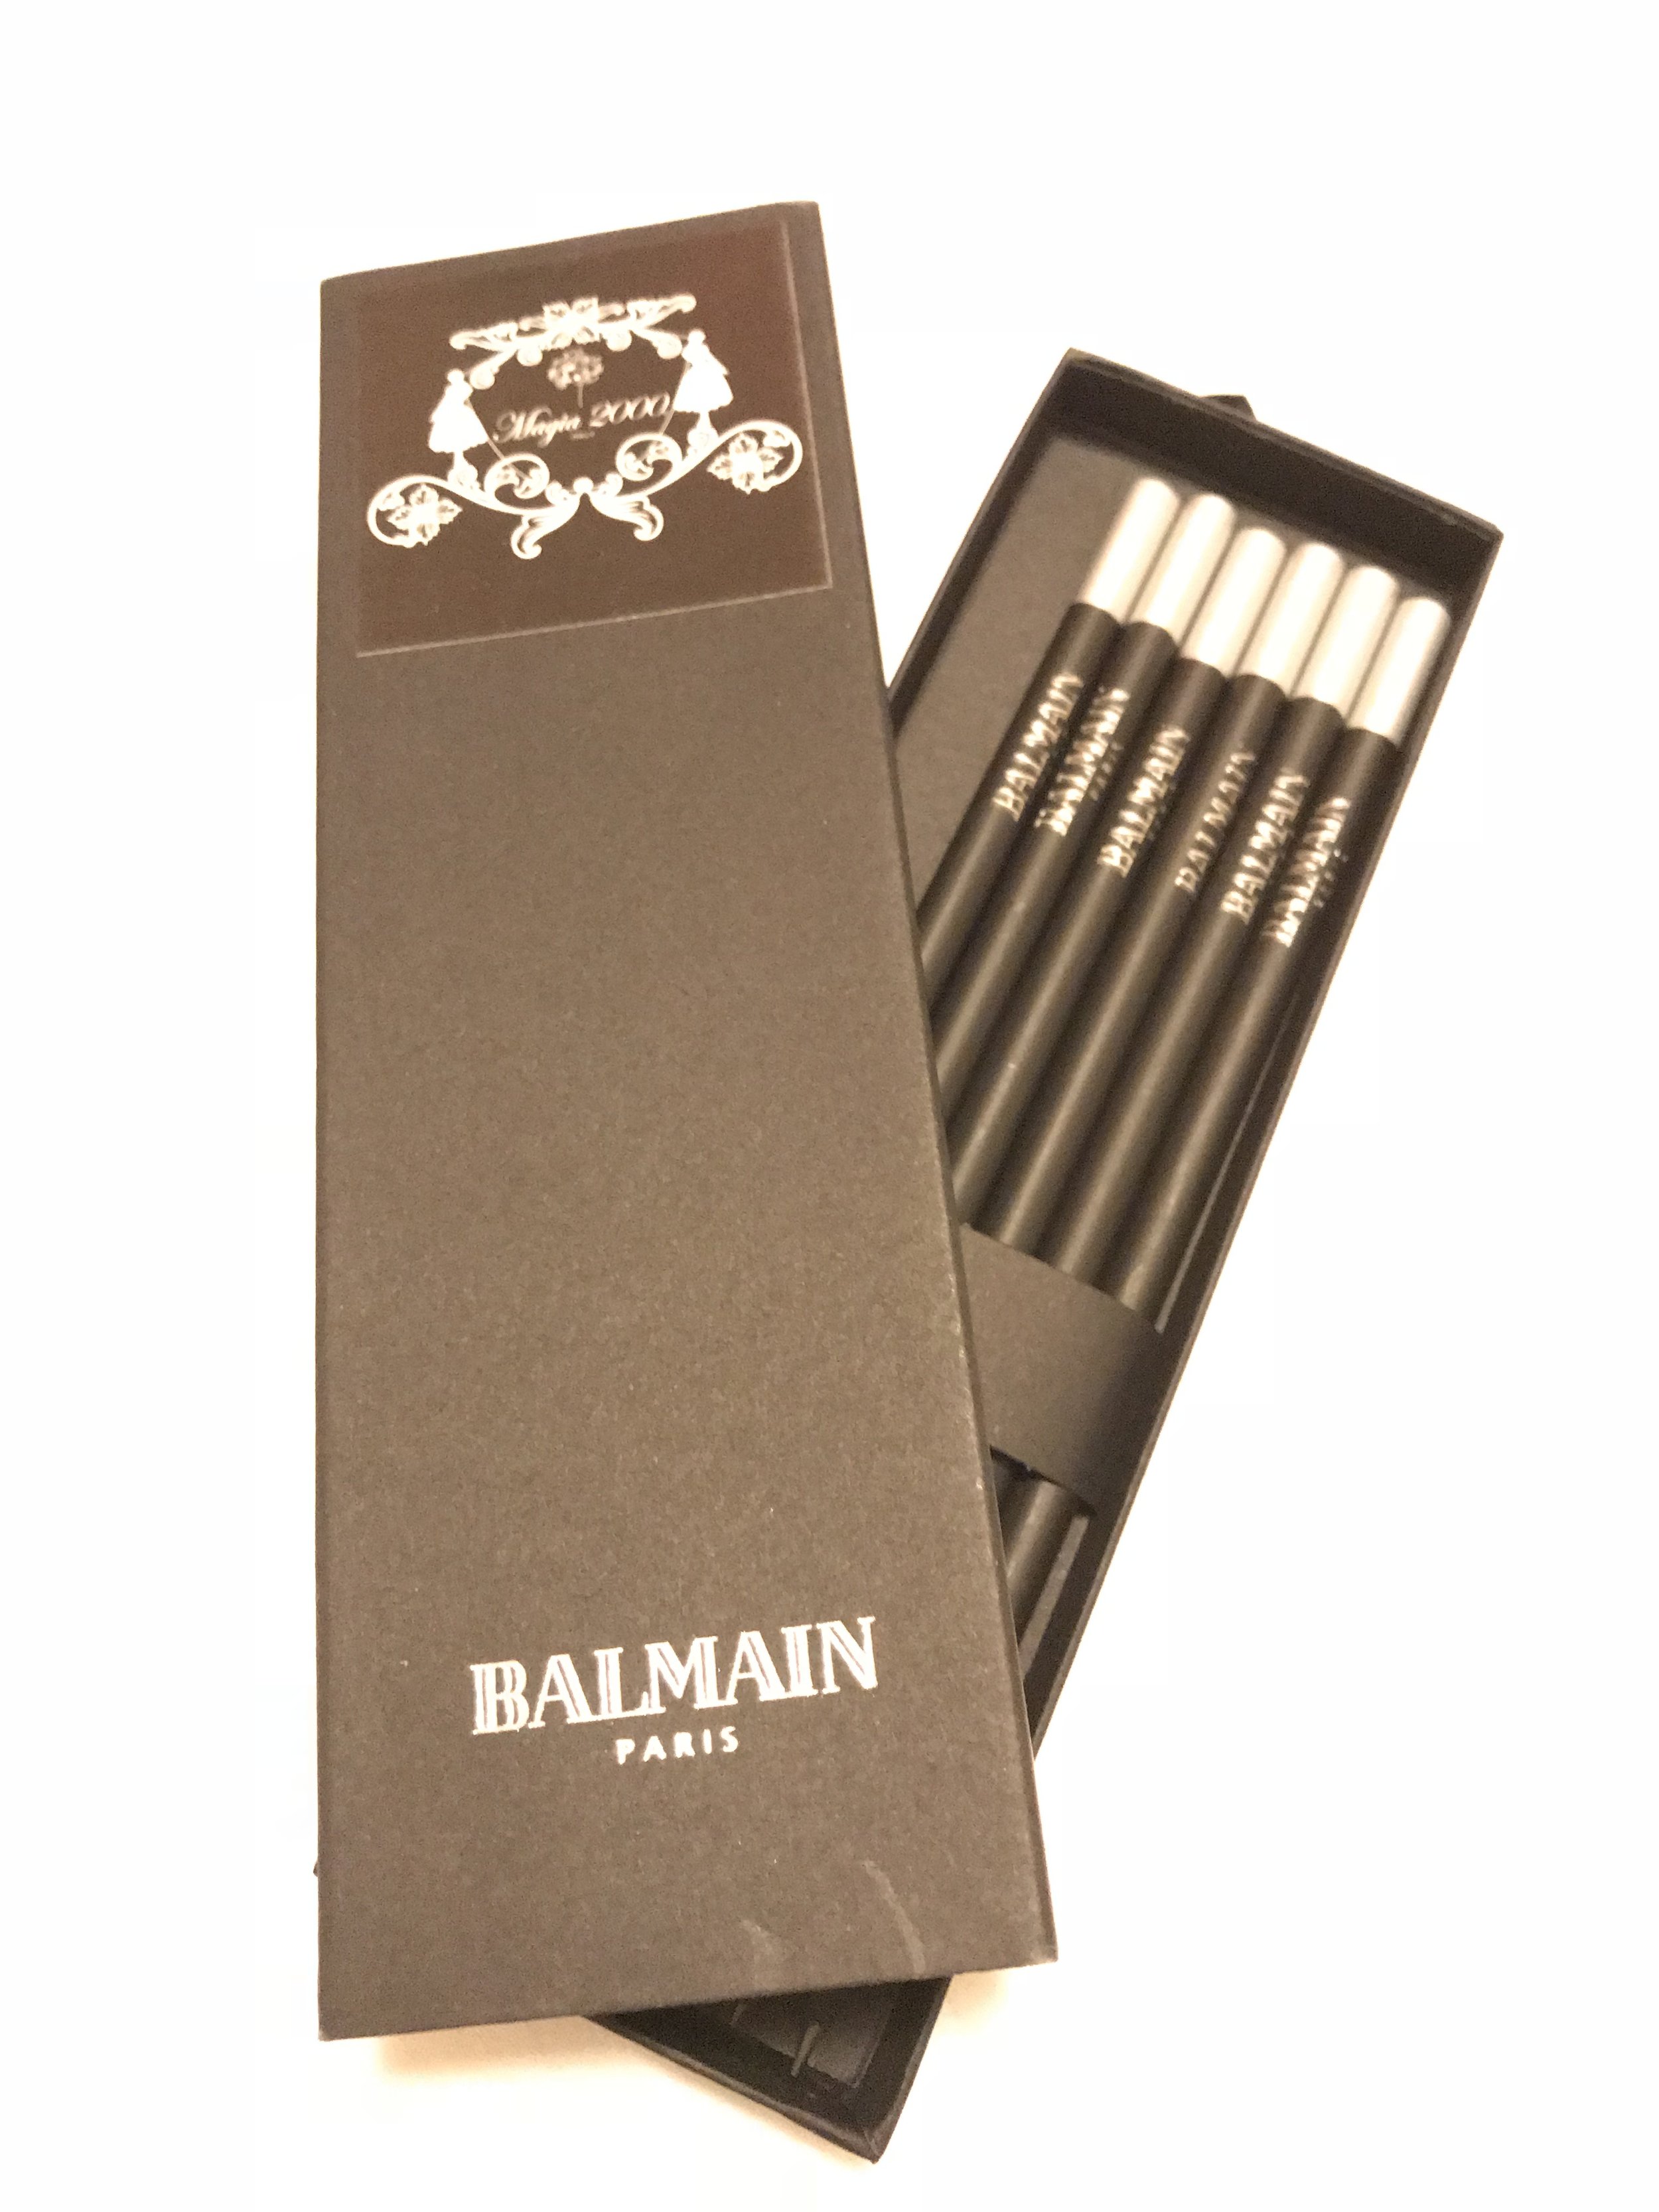 Best of the bunch: Balmain pencils!